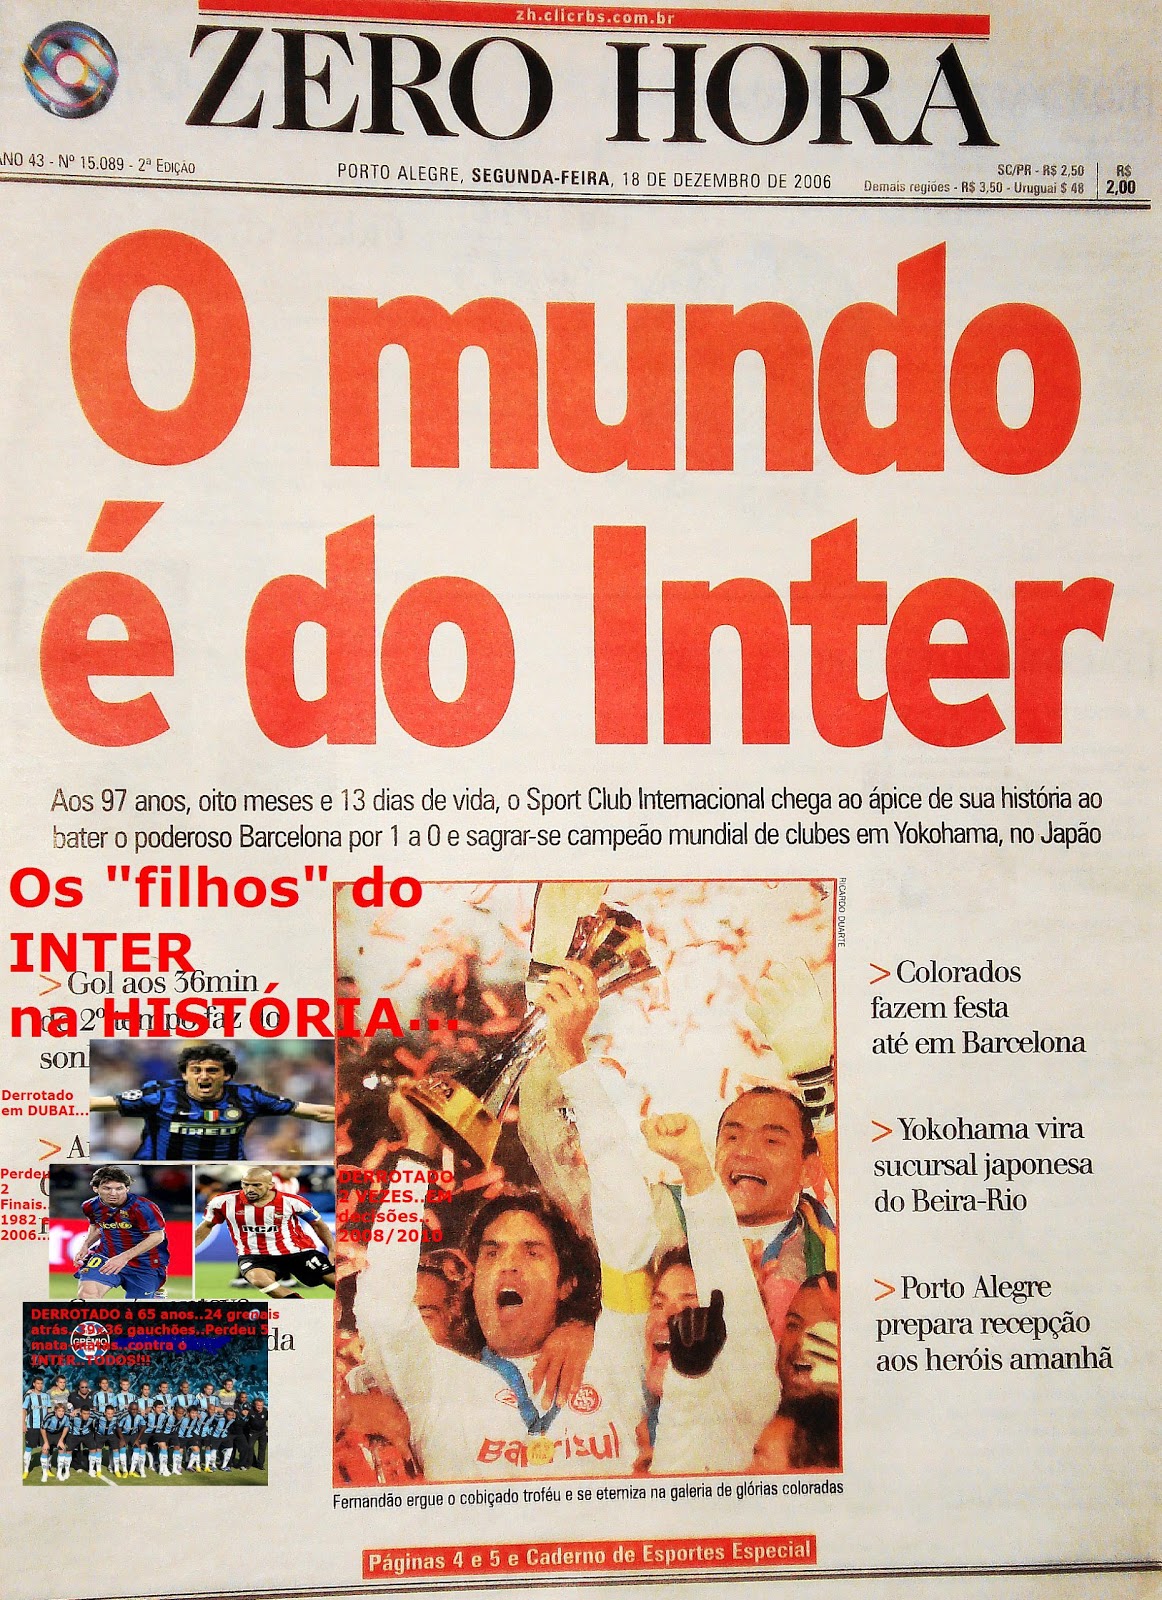 Futebol Nostálgico! on X: Caderno de esportes do jornal @OGlobo_Rio no dia  seguinte a vitória do Brasil contra a Austrália no segundo jogo da Copa de  2006 – Os problemas do time